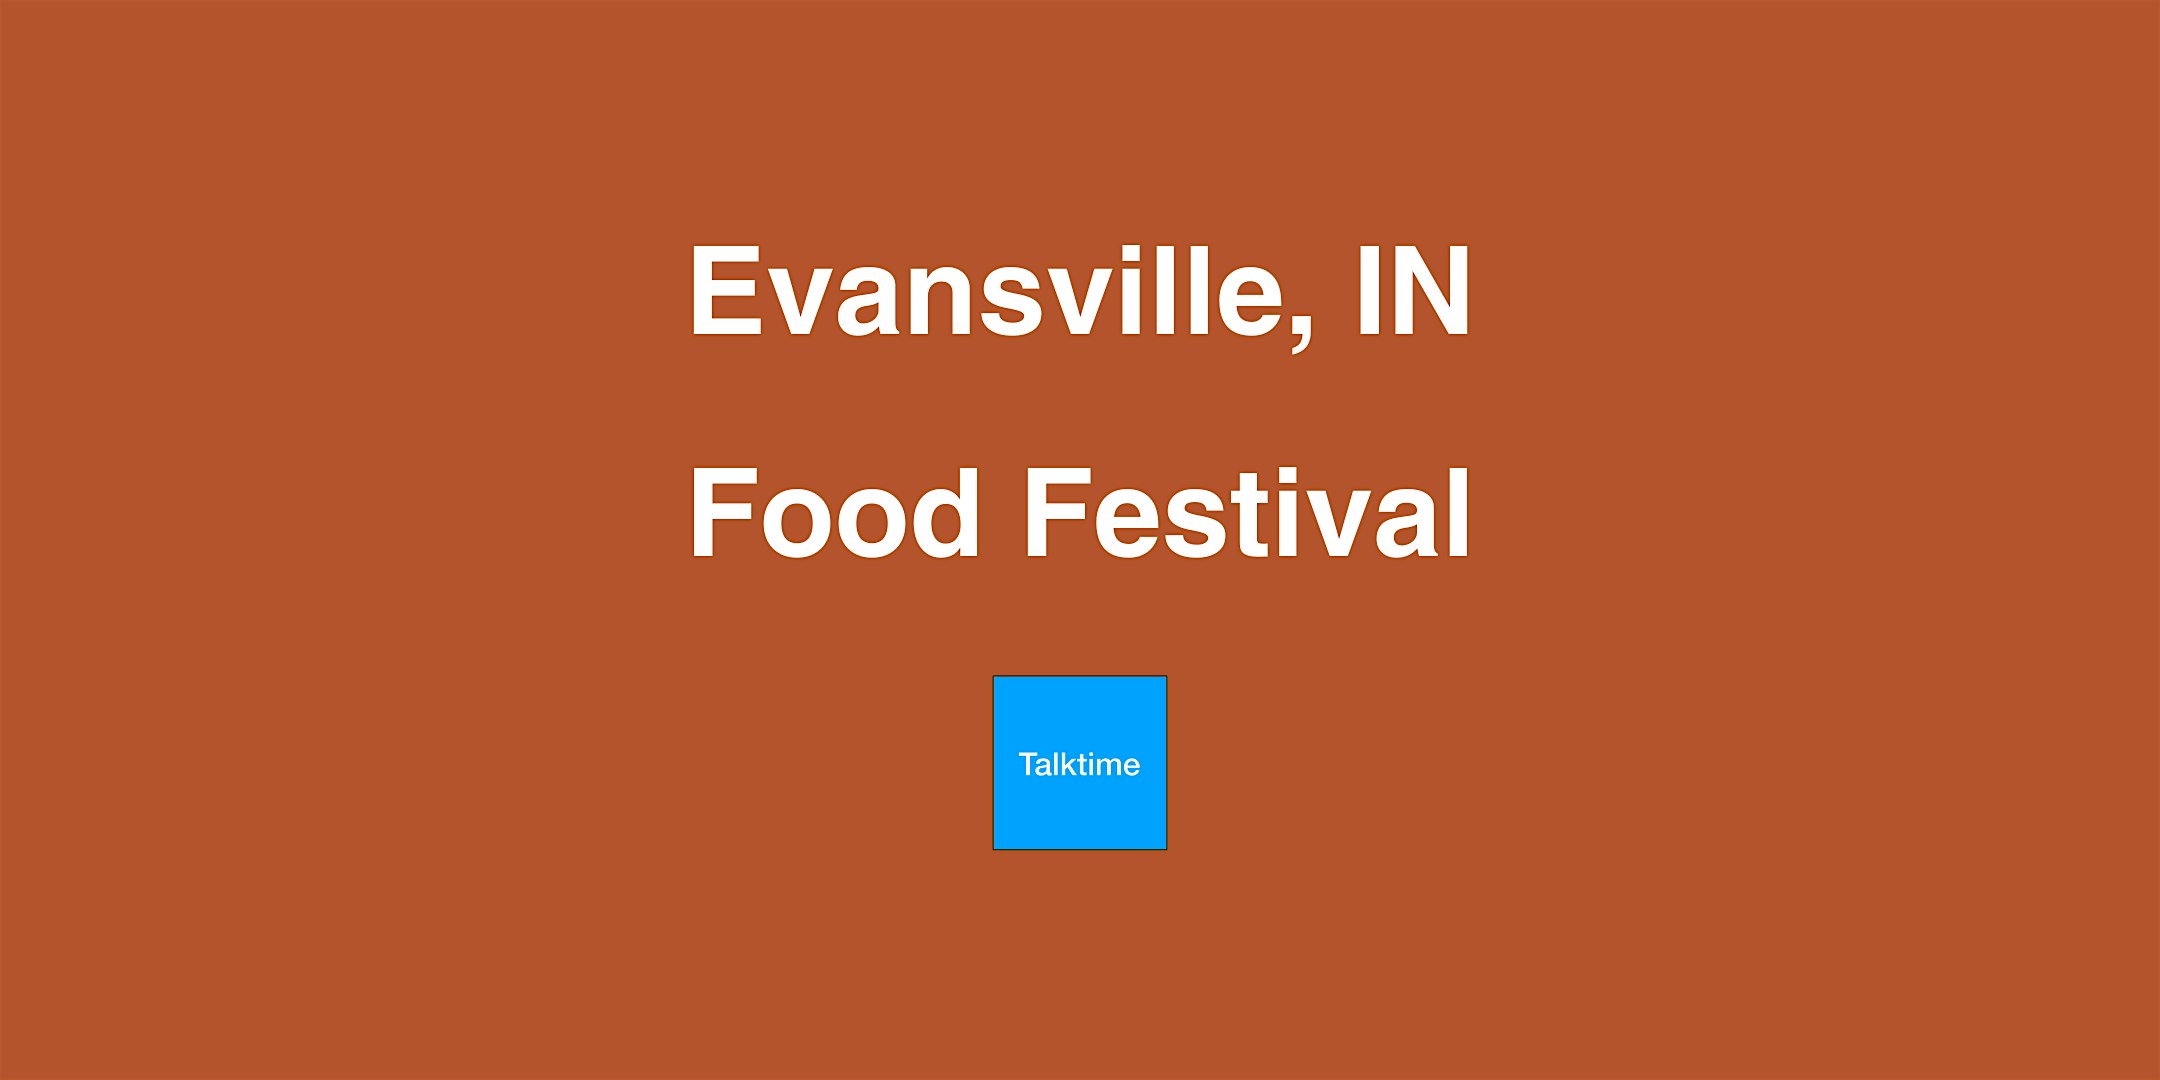 Food Festival - Evansville